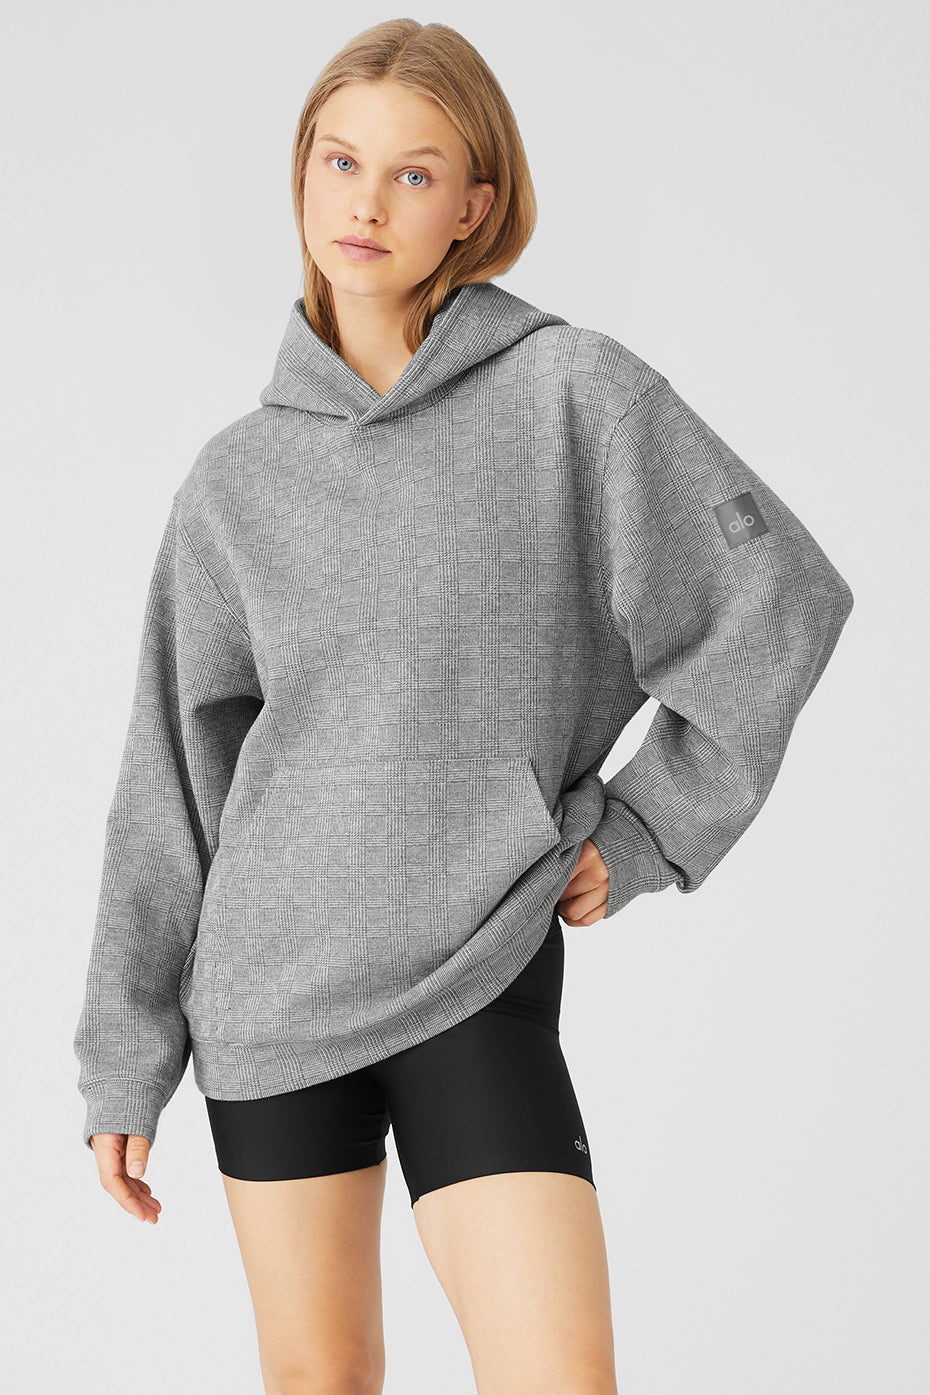 ALO Yoga, Tops, Alo Yoga Soho Hoodie Grey Size Medium Super Soft Roomy  Oversized Sweatshirt Hood